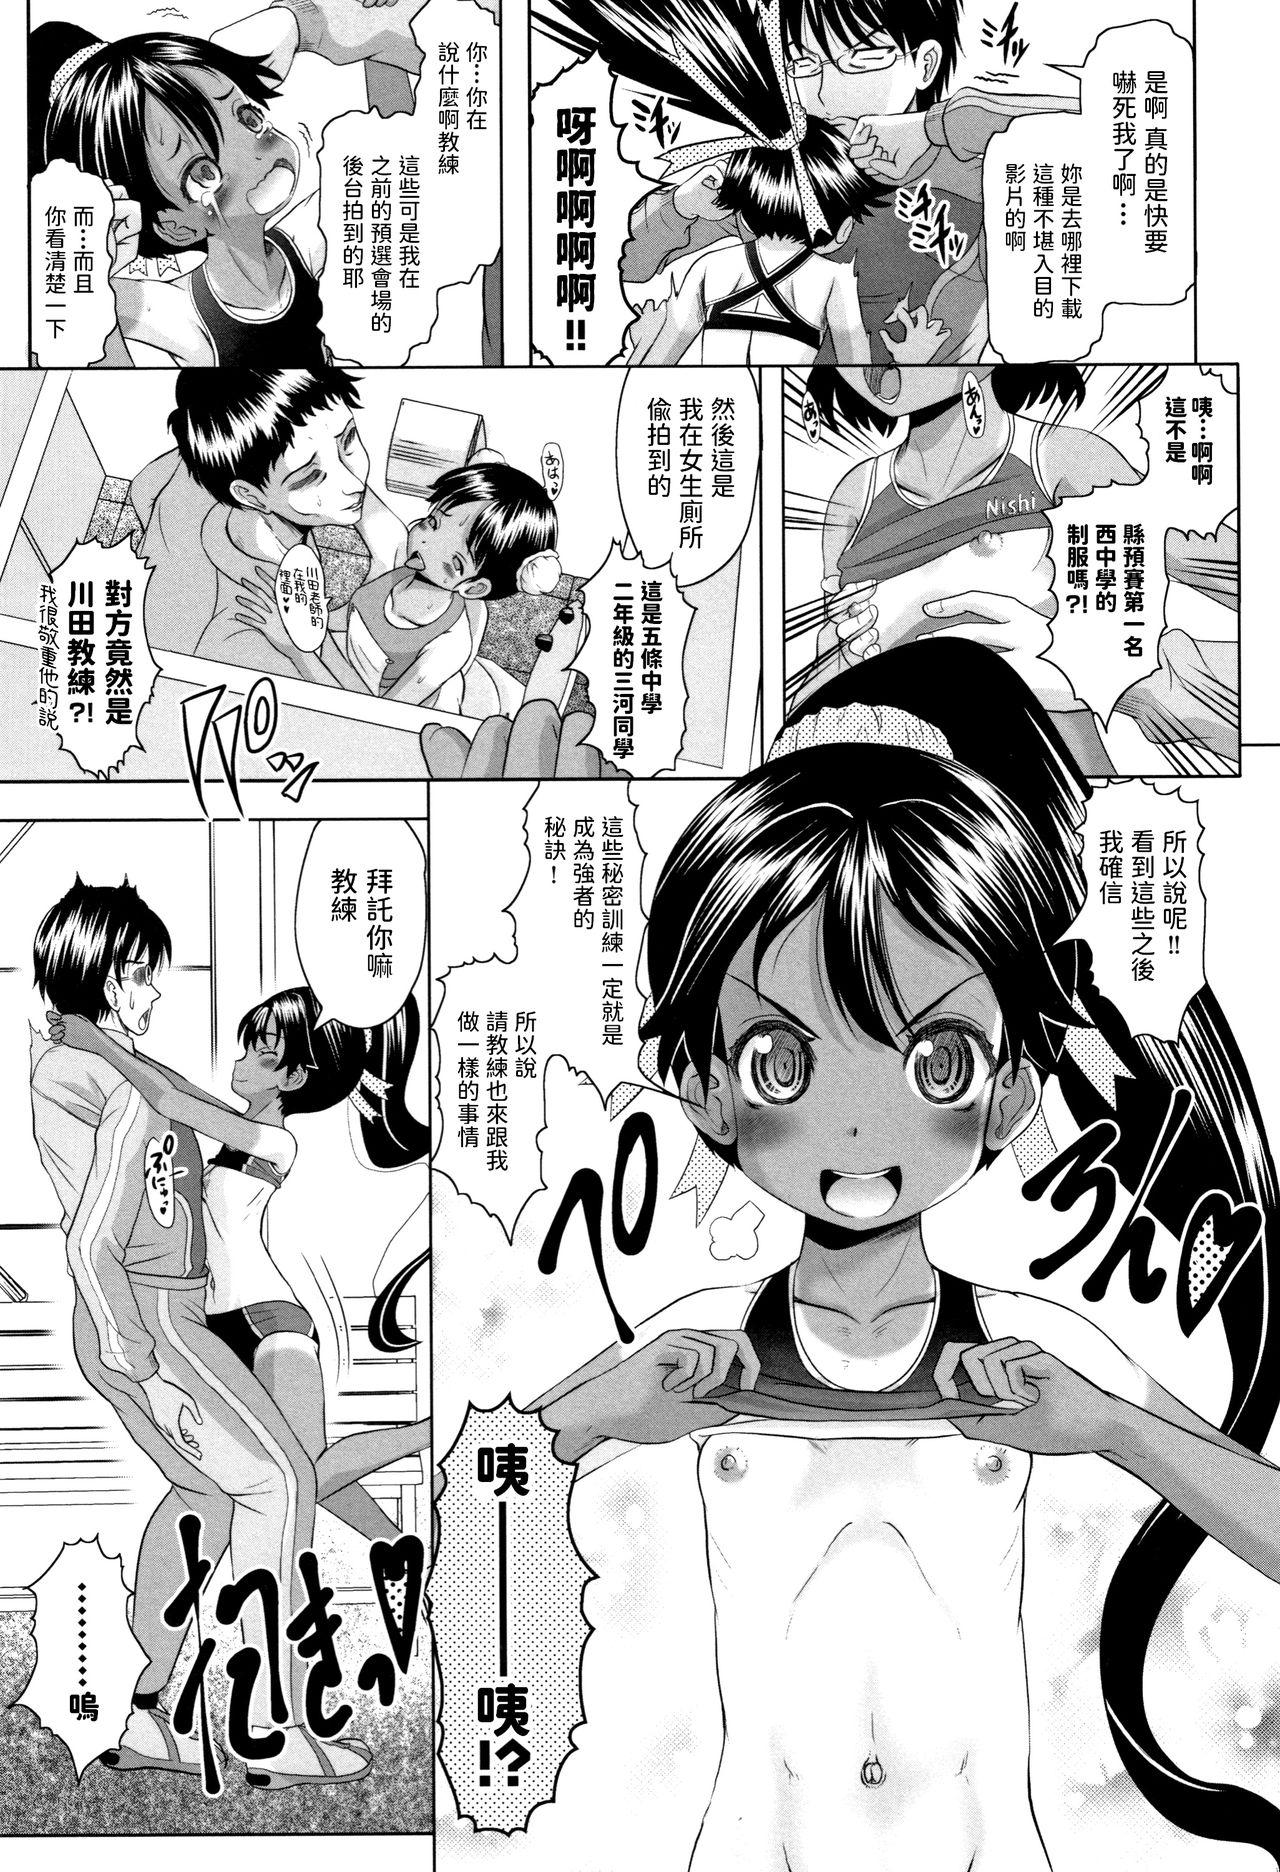 Teenage Sex Arima to Himitsu no Tokkun Shiyo! Spread - Page 5